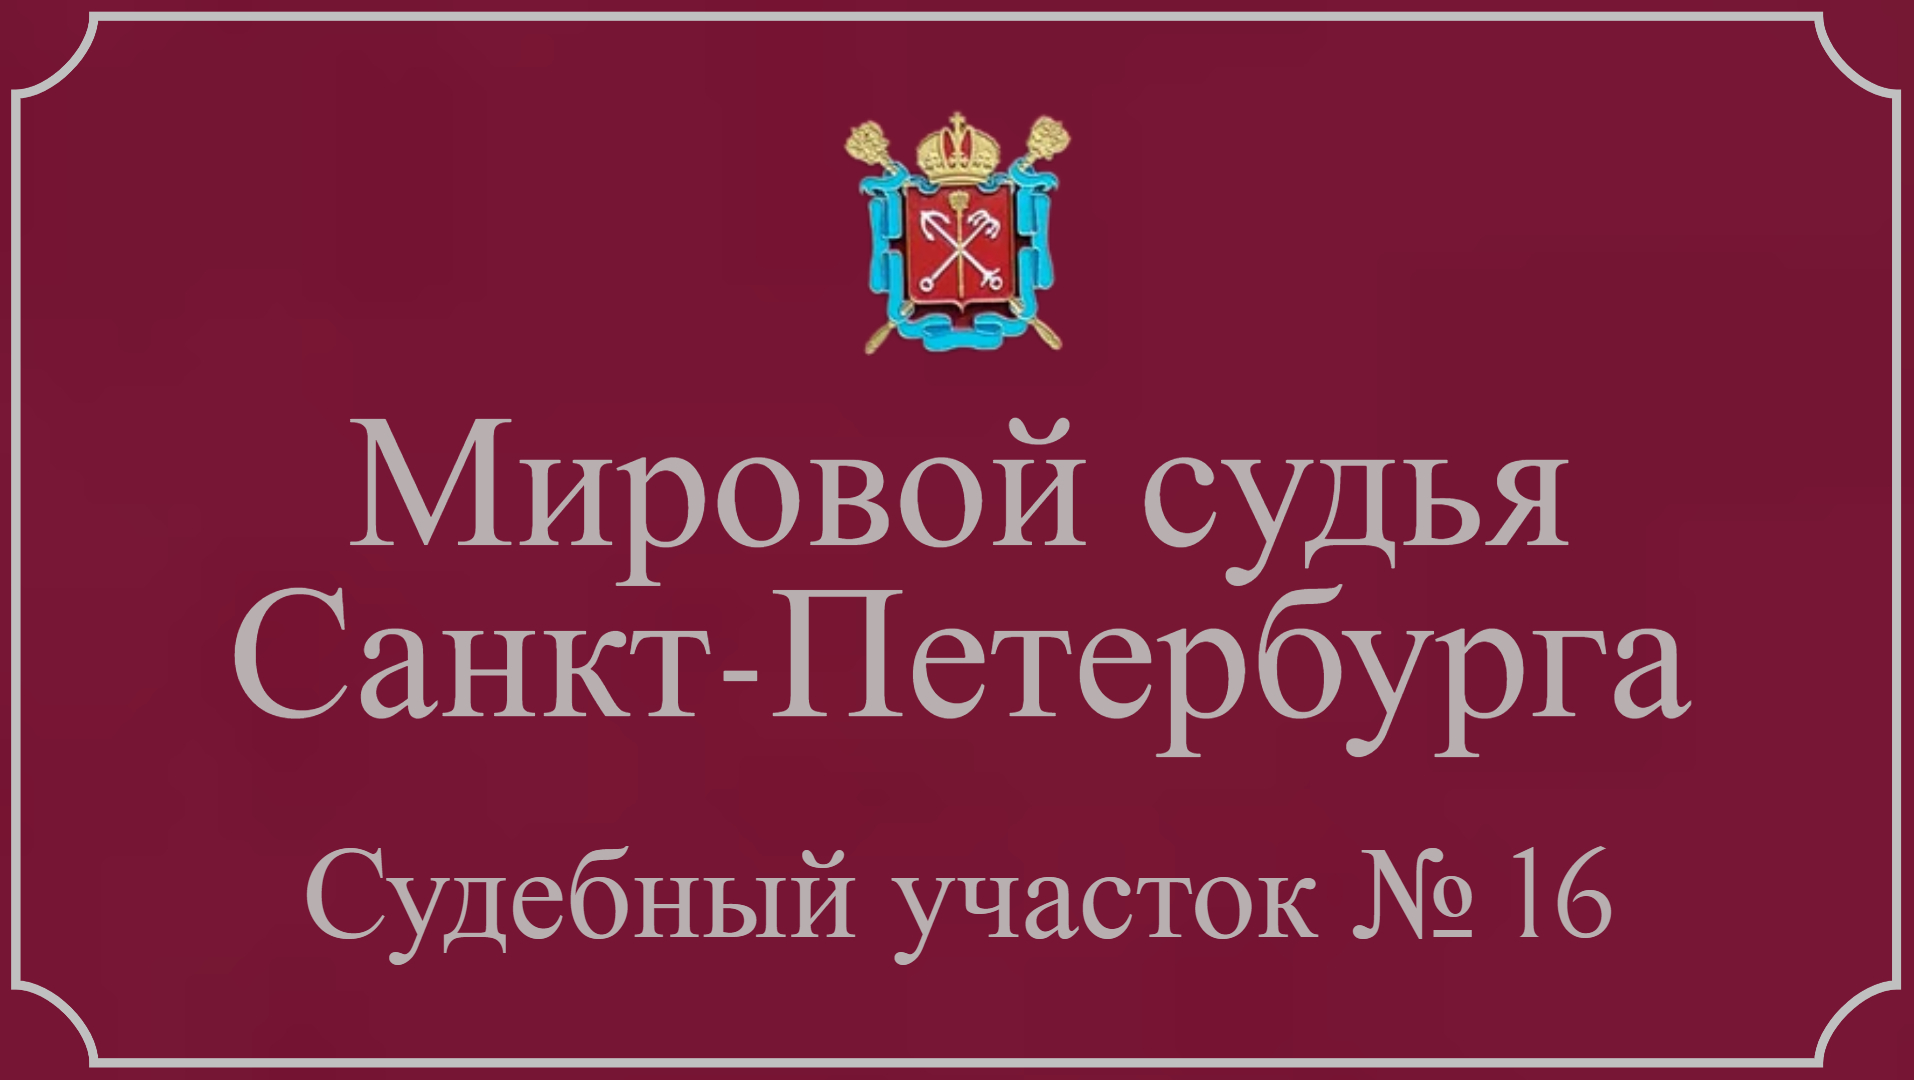 Информация по 16 судебному участку в Санкт-Петербурге.